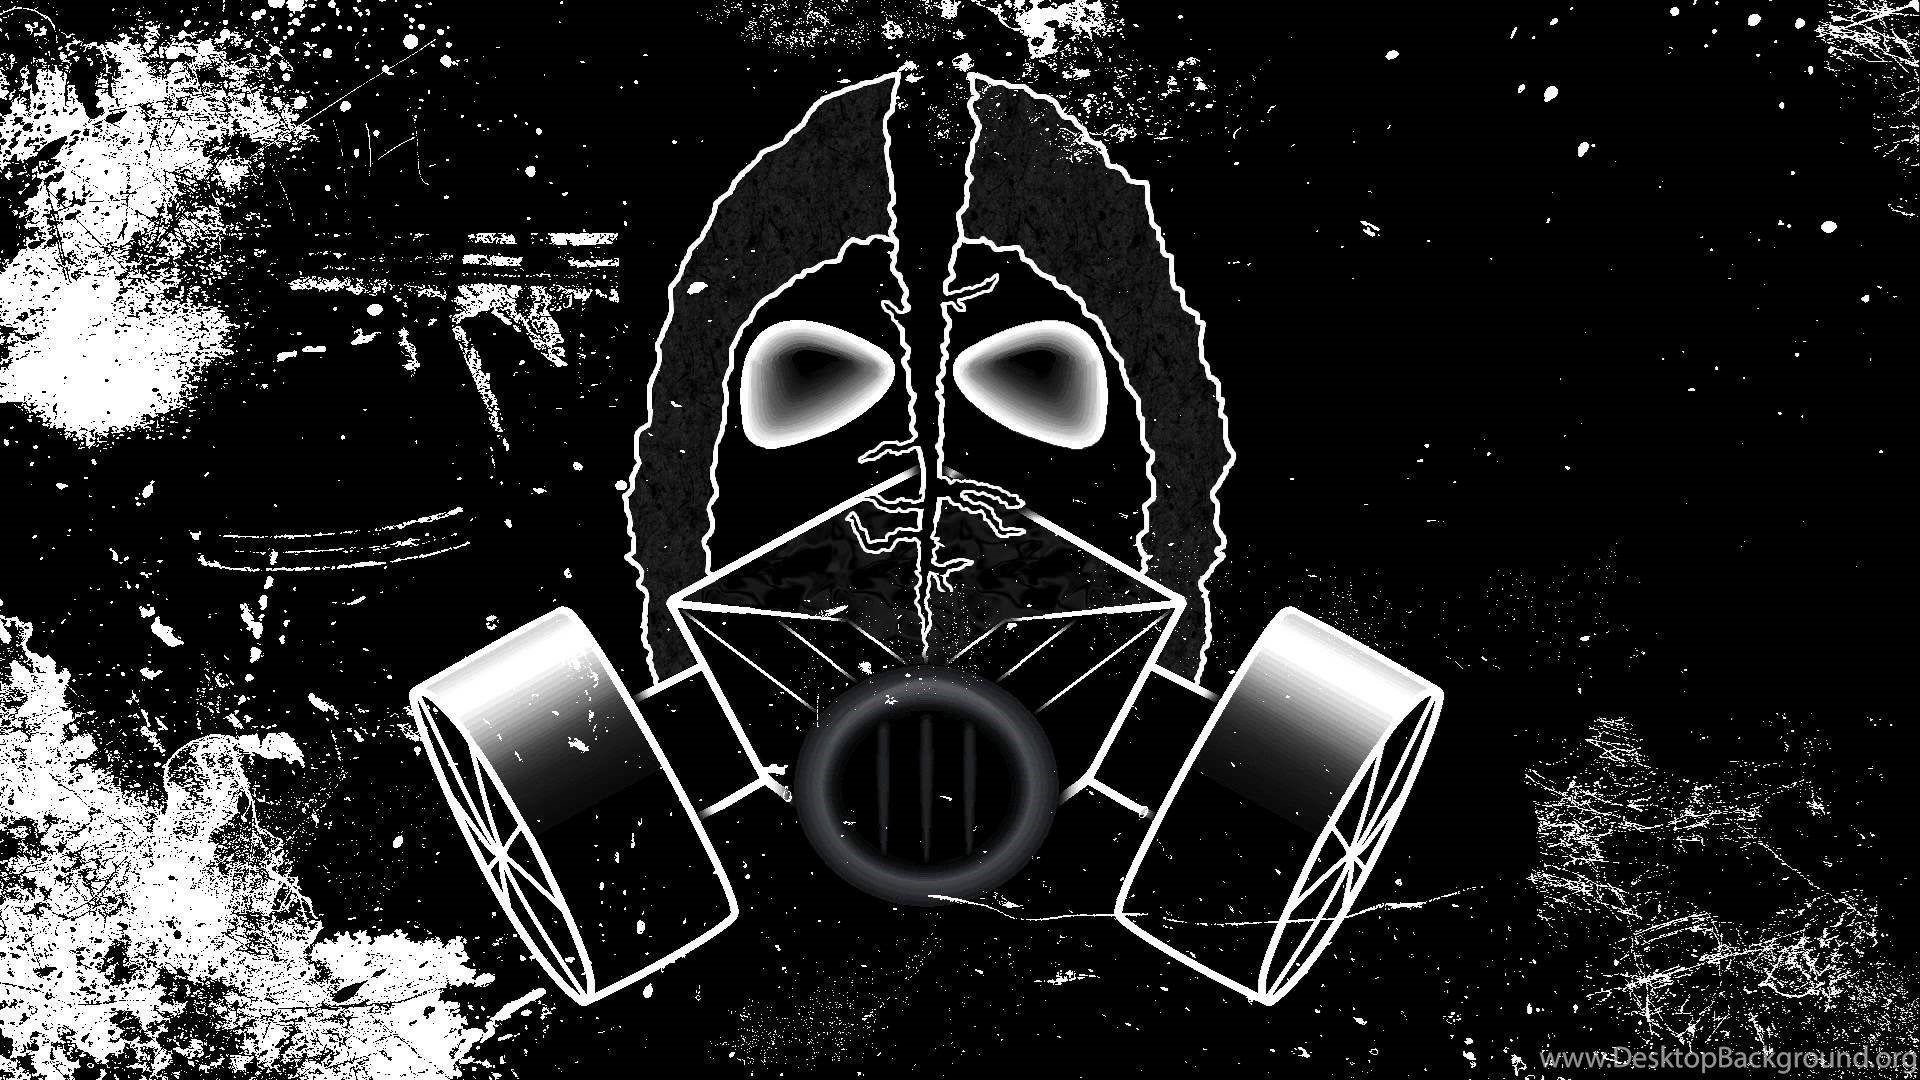 Top Dubstep Wallpaper Gas Mask Image For Desktop Background